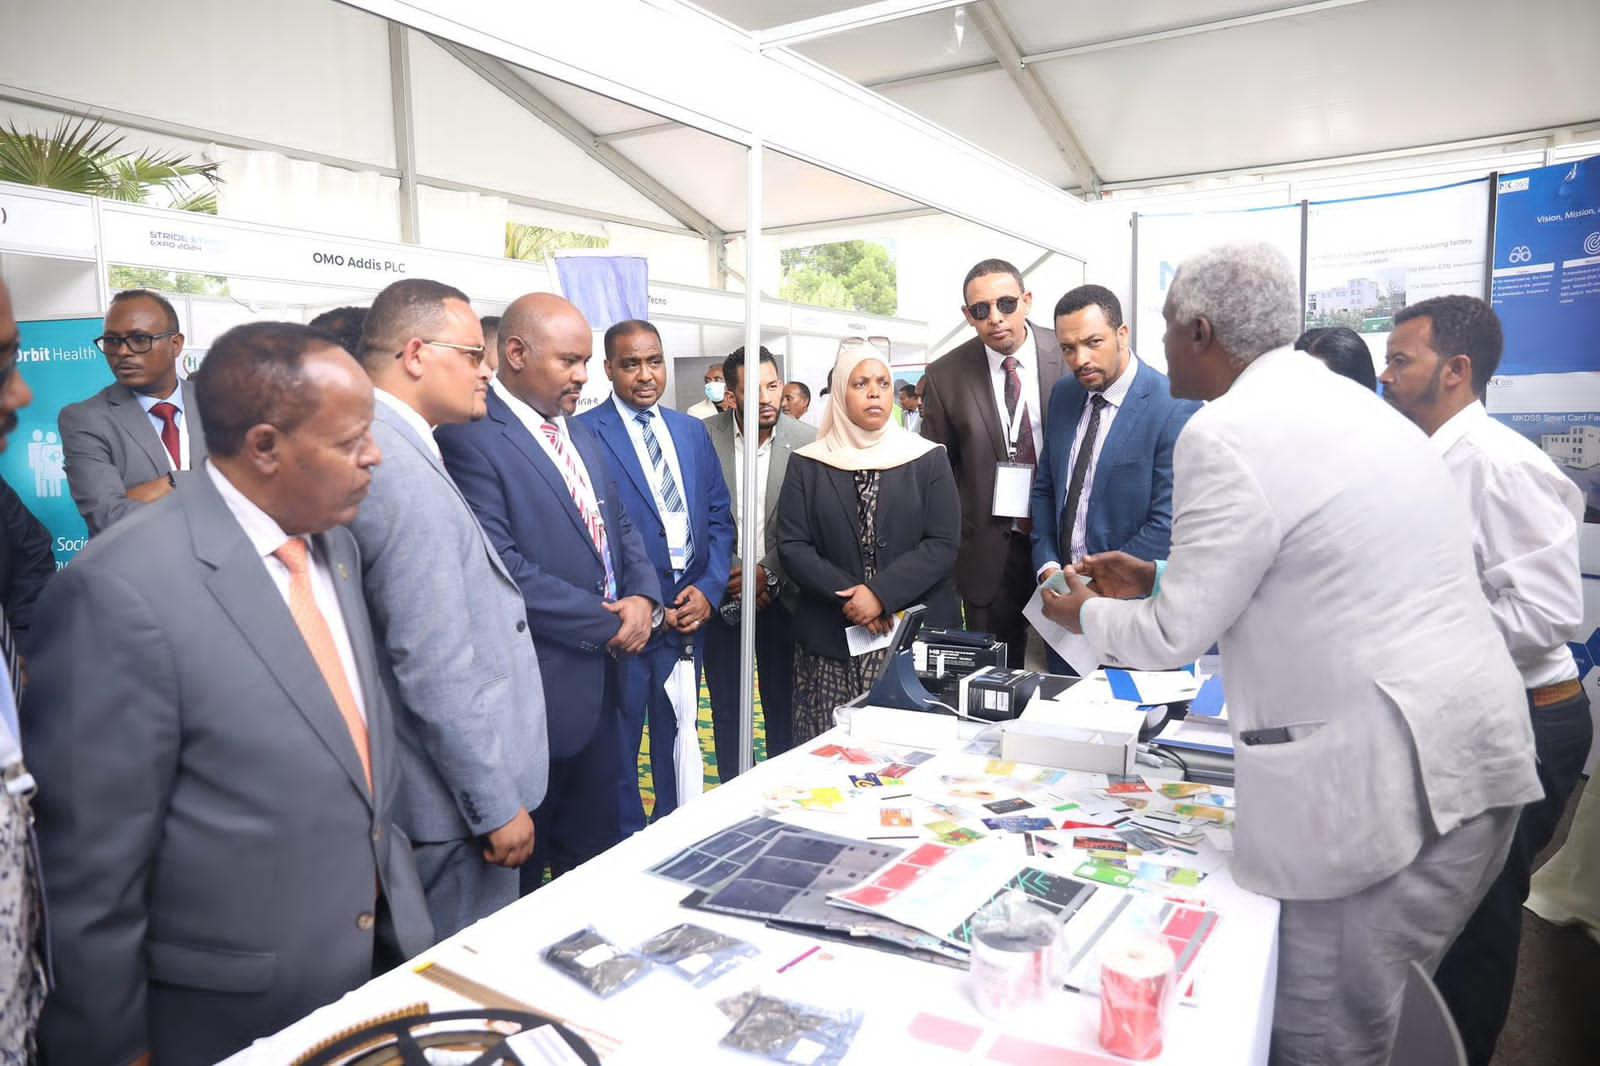 MK DSS PARTICIPATED IN THE EVENT “STRIDE ETHIOPIA” AT ICT PARK, ETHIOPIA